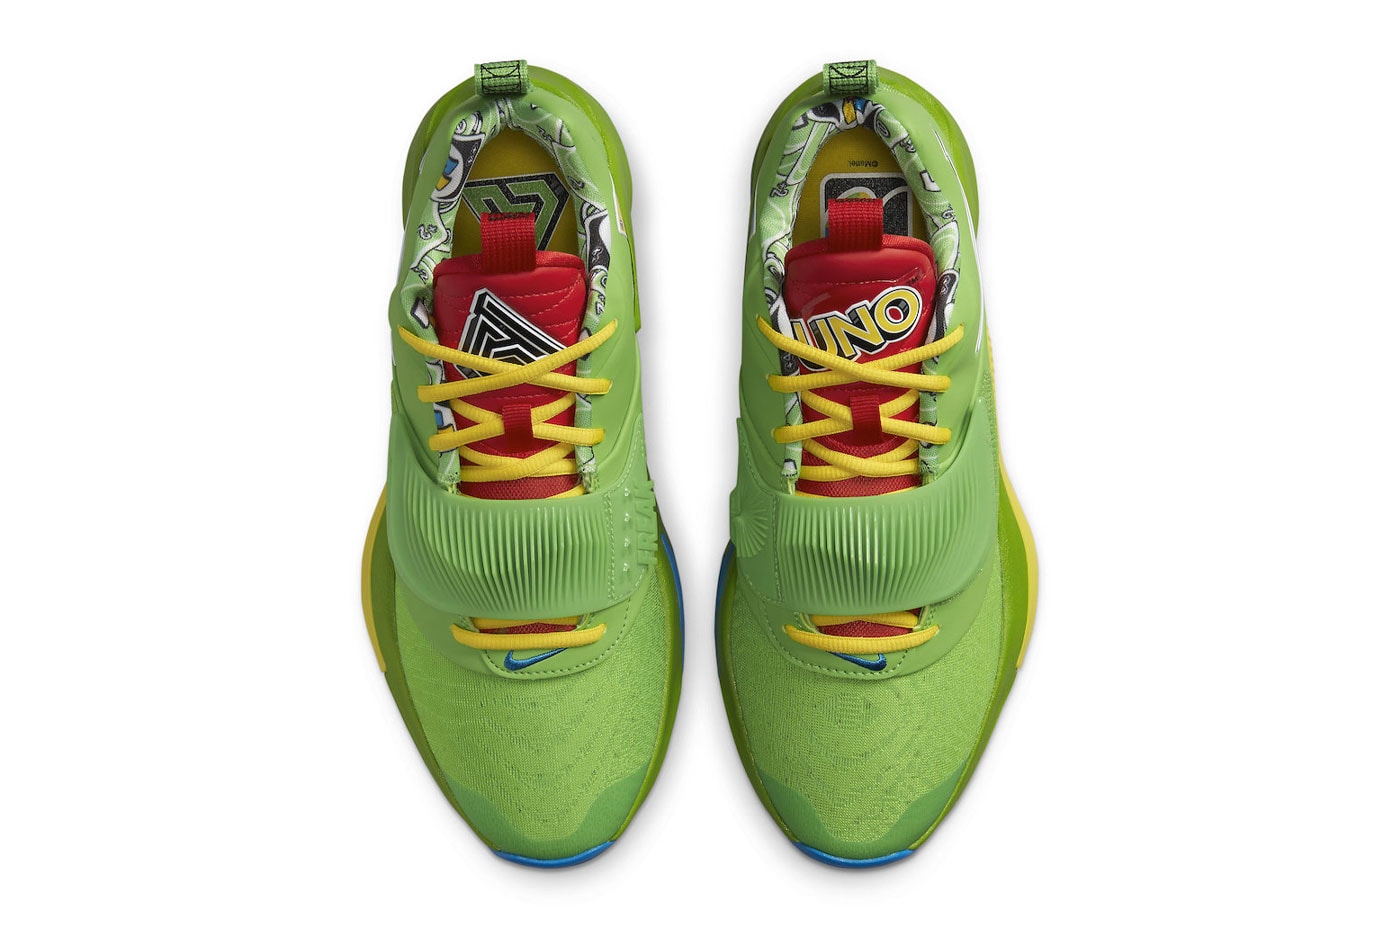 UNO x Nike Zoom Freak 3 Green Yellow DC9364-300 DC9364-700 Release 2022 Giannis Antetokounmpo